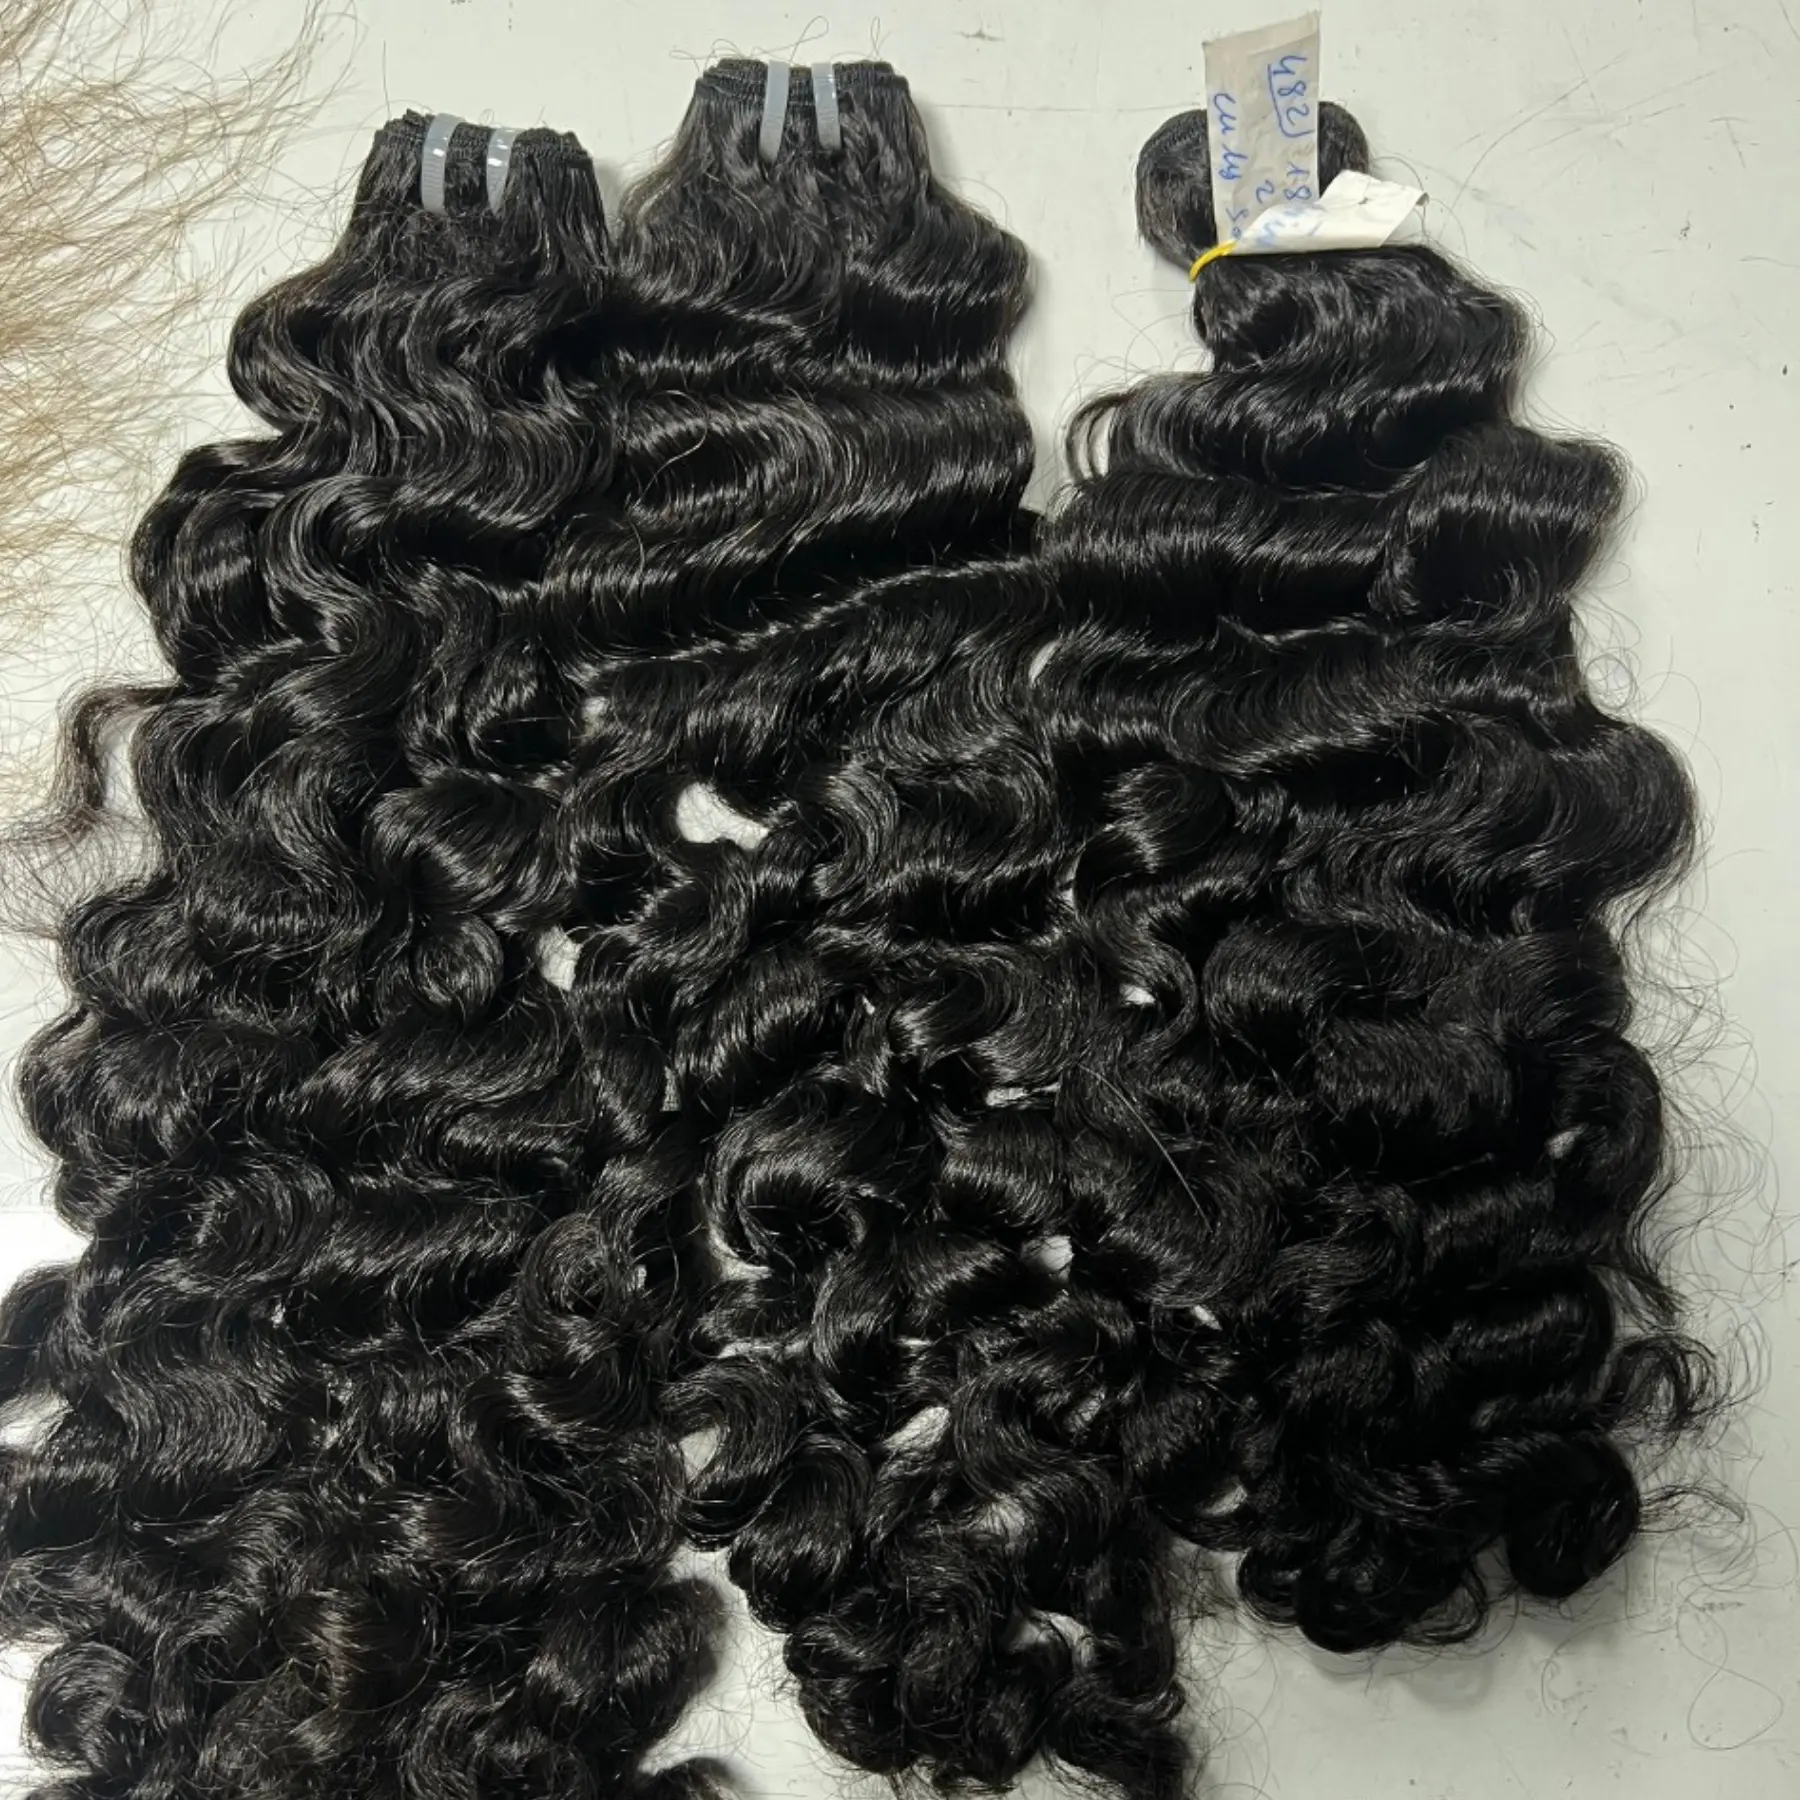 Необработанные натуральные волосы в пучке, вьетнамские волнистые черные волосы, произведенные фабрикой Hairvietnam